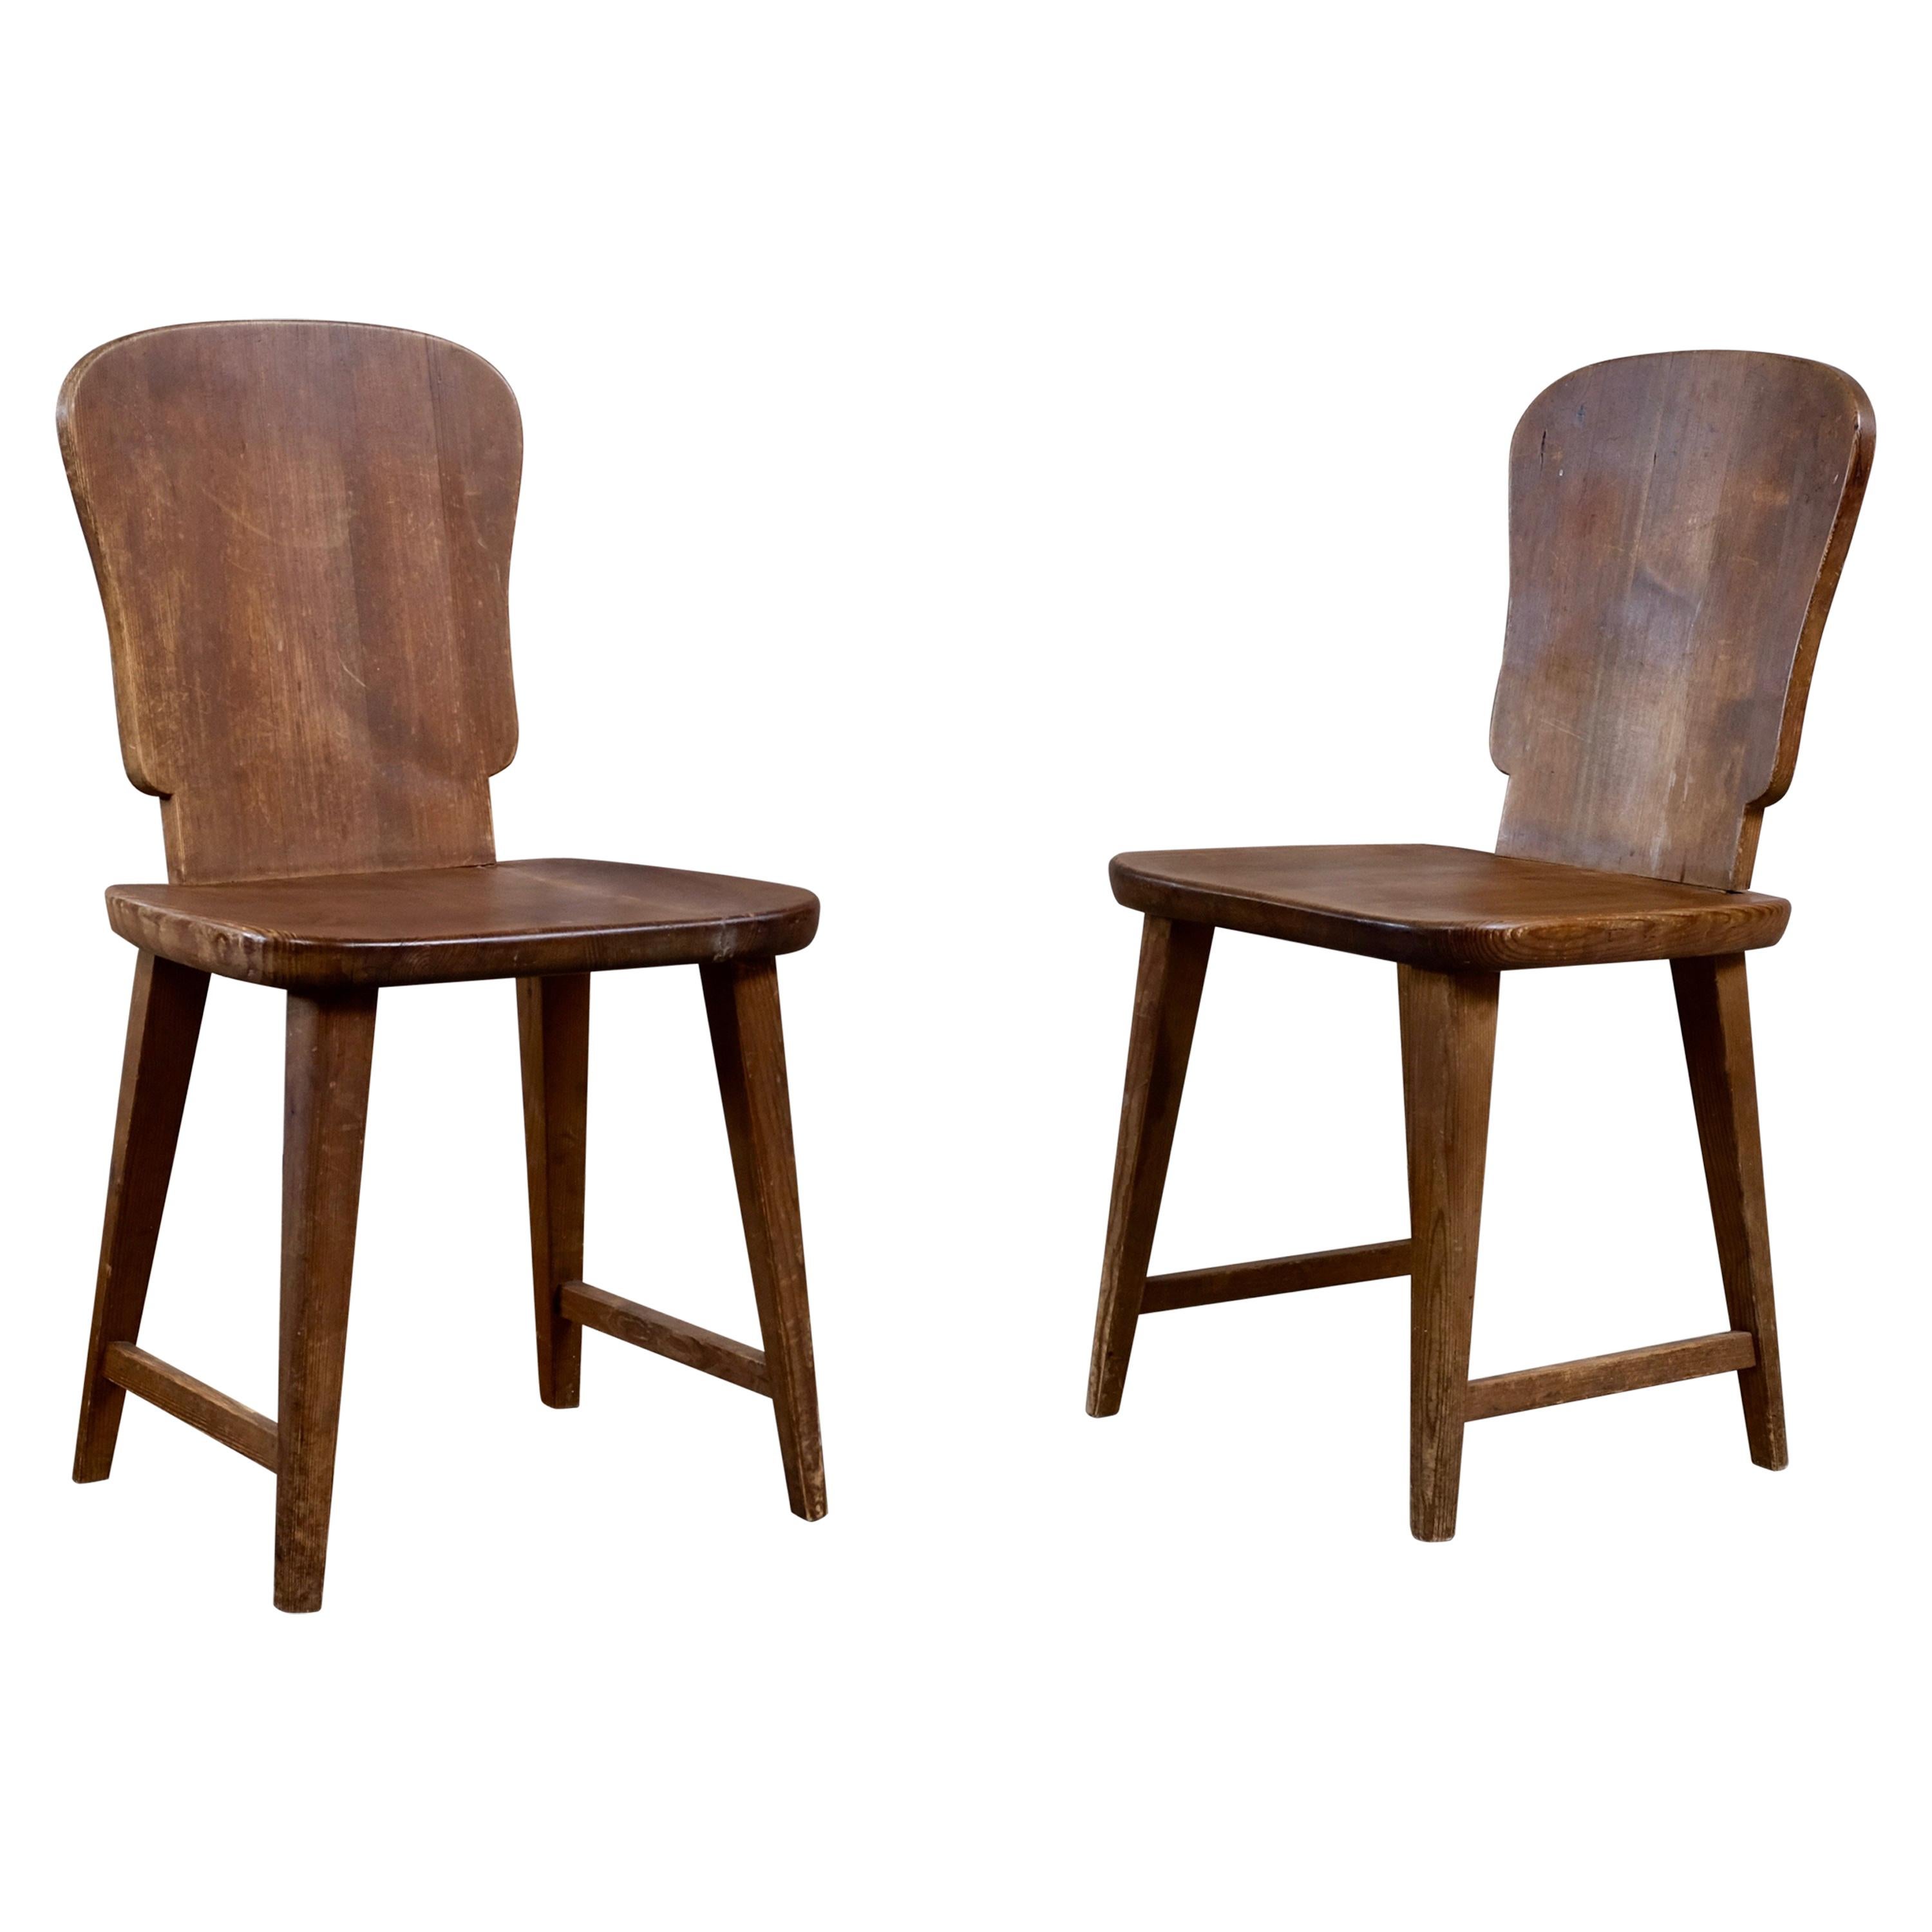 Rare Set of 6 Swedish Pine Chairs, 1940s